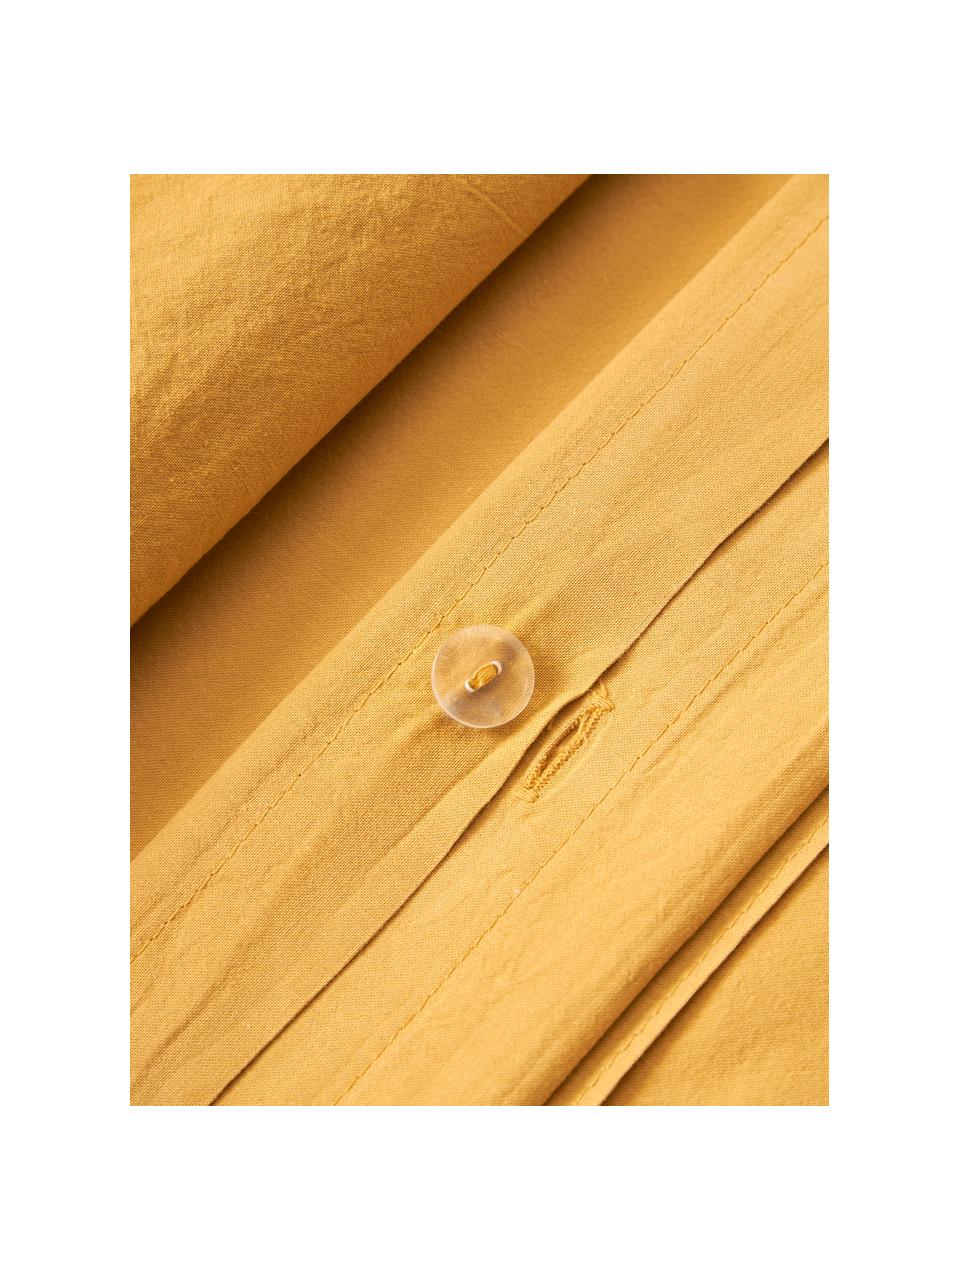 Gewaschener Baumwoll-Kopfkissenbezug Darlyn, 100 % Baumwolle
Fadendichte 150 TC, Standard Qualität

Bettwäsche aus Baumwolle fühlt sich auf der Haut angenehm weich an, nimmt Feuchtigkeit gut auf und eignet sich für Allergiker.

Durch ein besonderes Waschungsverfahren erhält der Stoff eine robuste, unregelmässige Stonewash-Optik. Ausserdem wird der Stoff dadurch weich und geschmeidig im Griff und erhält eine natürliche Knitter-Optik, die kein Bügeln erfordert und Gemütlichkeit ausstrahlt.

Das in diesem Produkt verwendete Material ist schadstoffgeprüft und zertifiziert nach STANDARD 100 by OEKO-TEX®, 4265CIT, CITEVE., Senfgelb, B 40 x L 80 cm